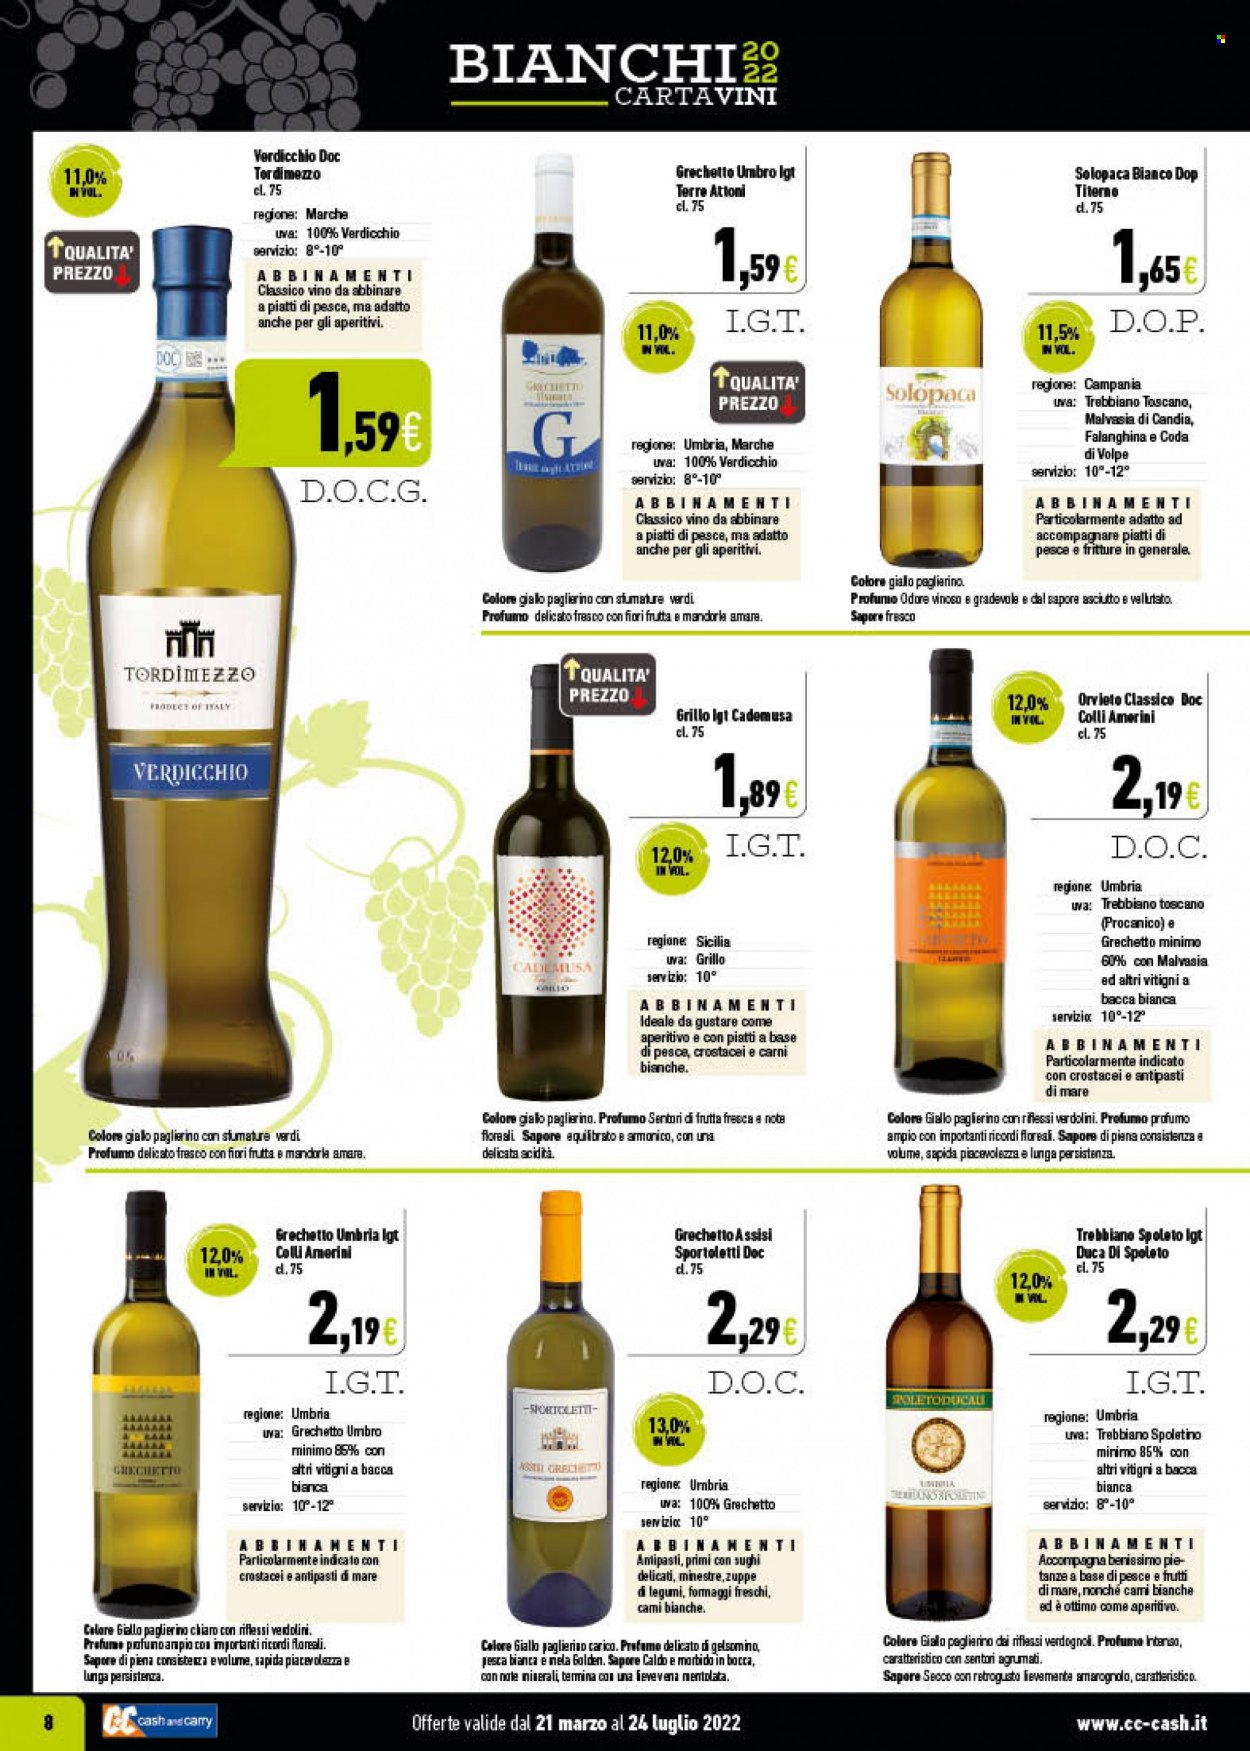 thumbnail - Volantino C+C Cash & Carry - 21/3/2022 - 24/7/2022 - Prodotti in offerta - vino bianco, vino, Verdicchio, Trebbiano, Malvasia, profumo. Pagina 8.